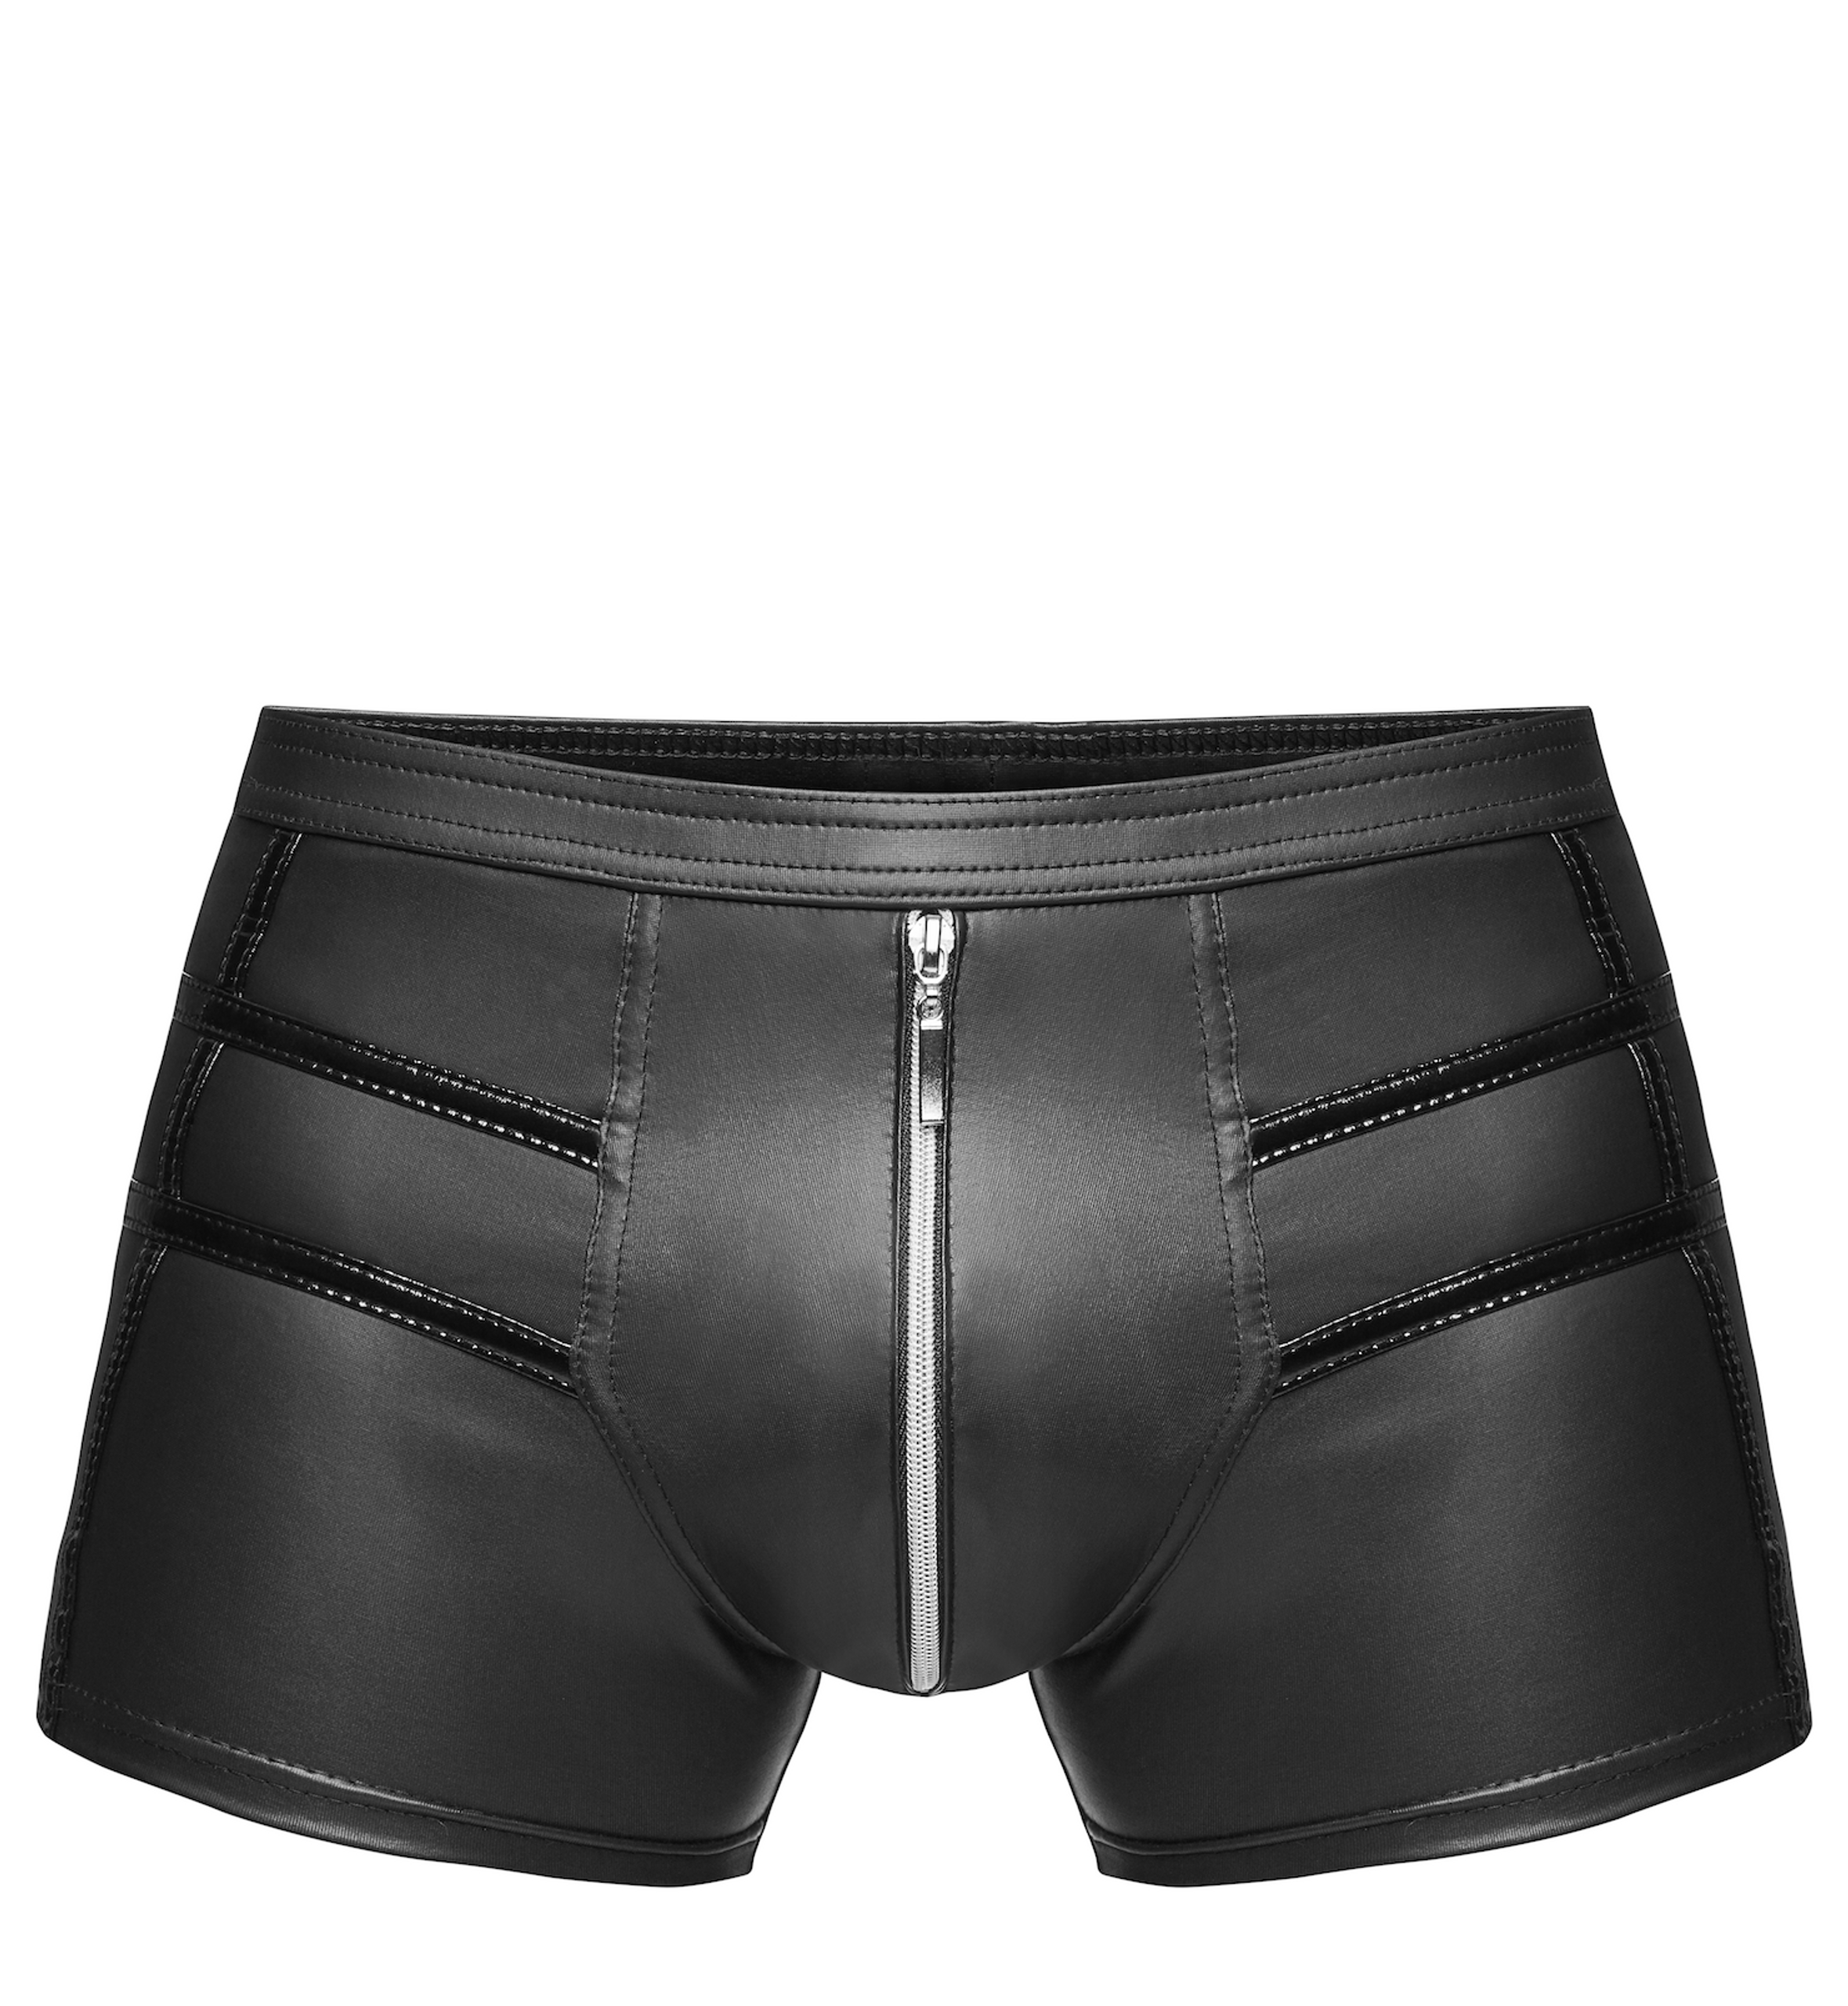 Noir Handmade H006 Sexy shorts mit heißen Details